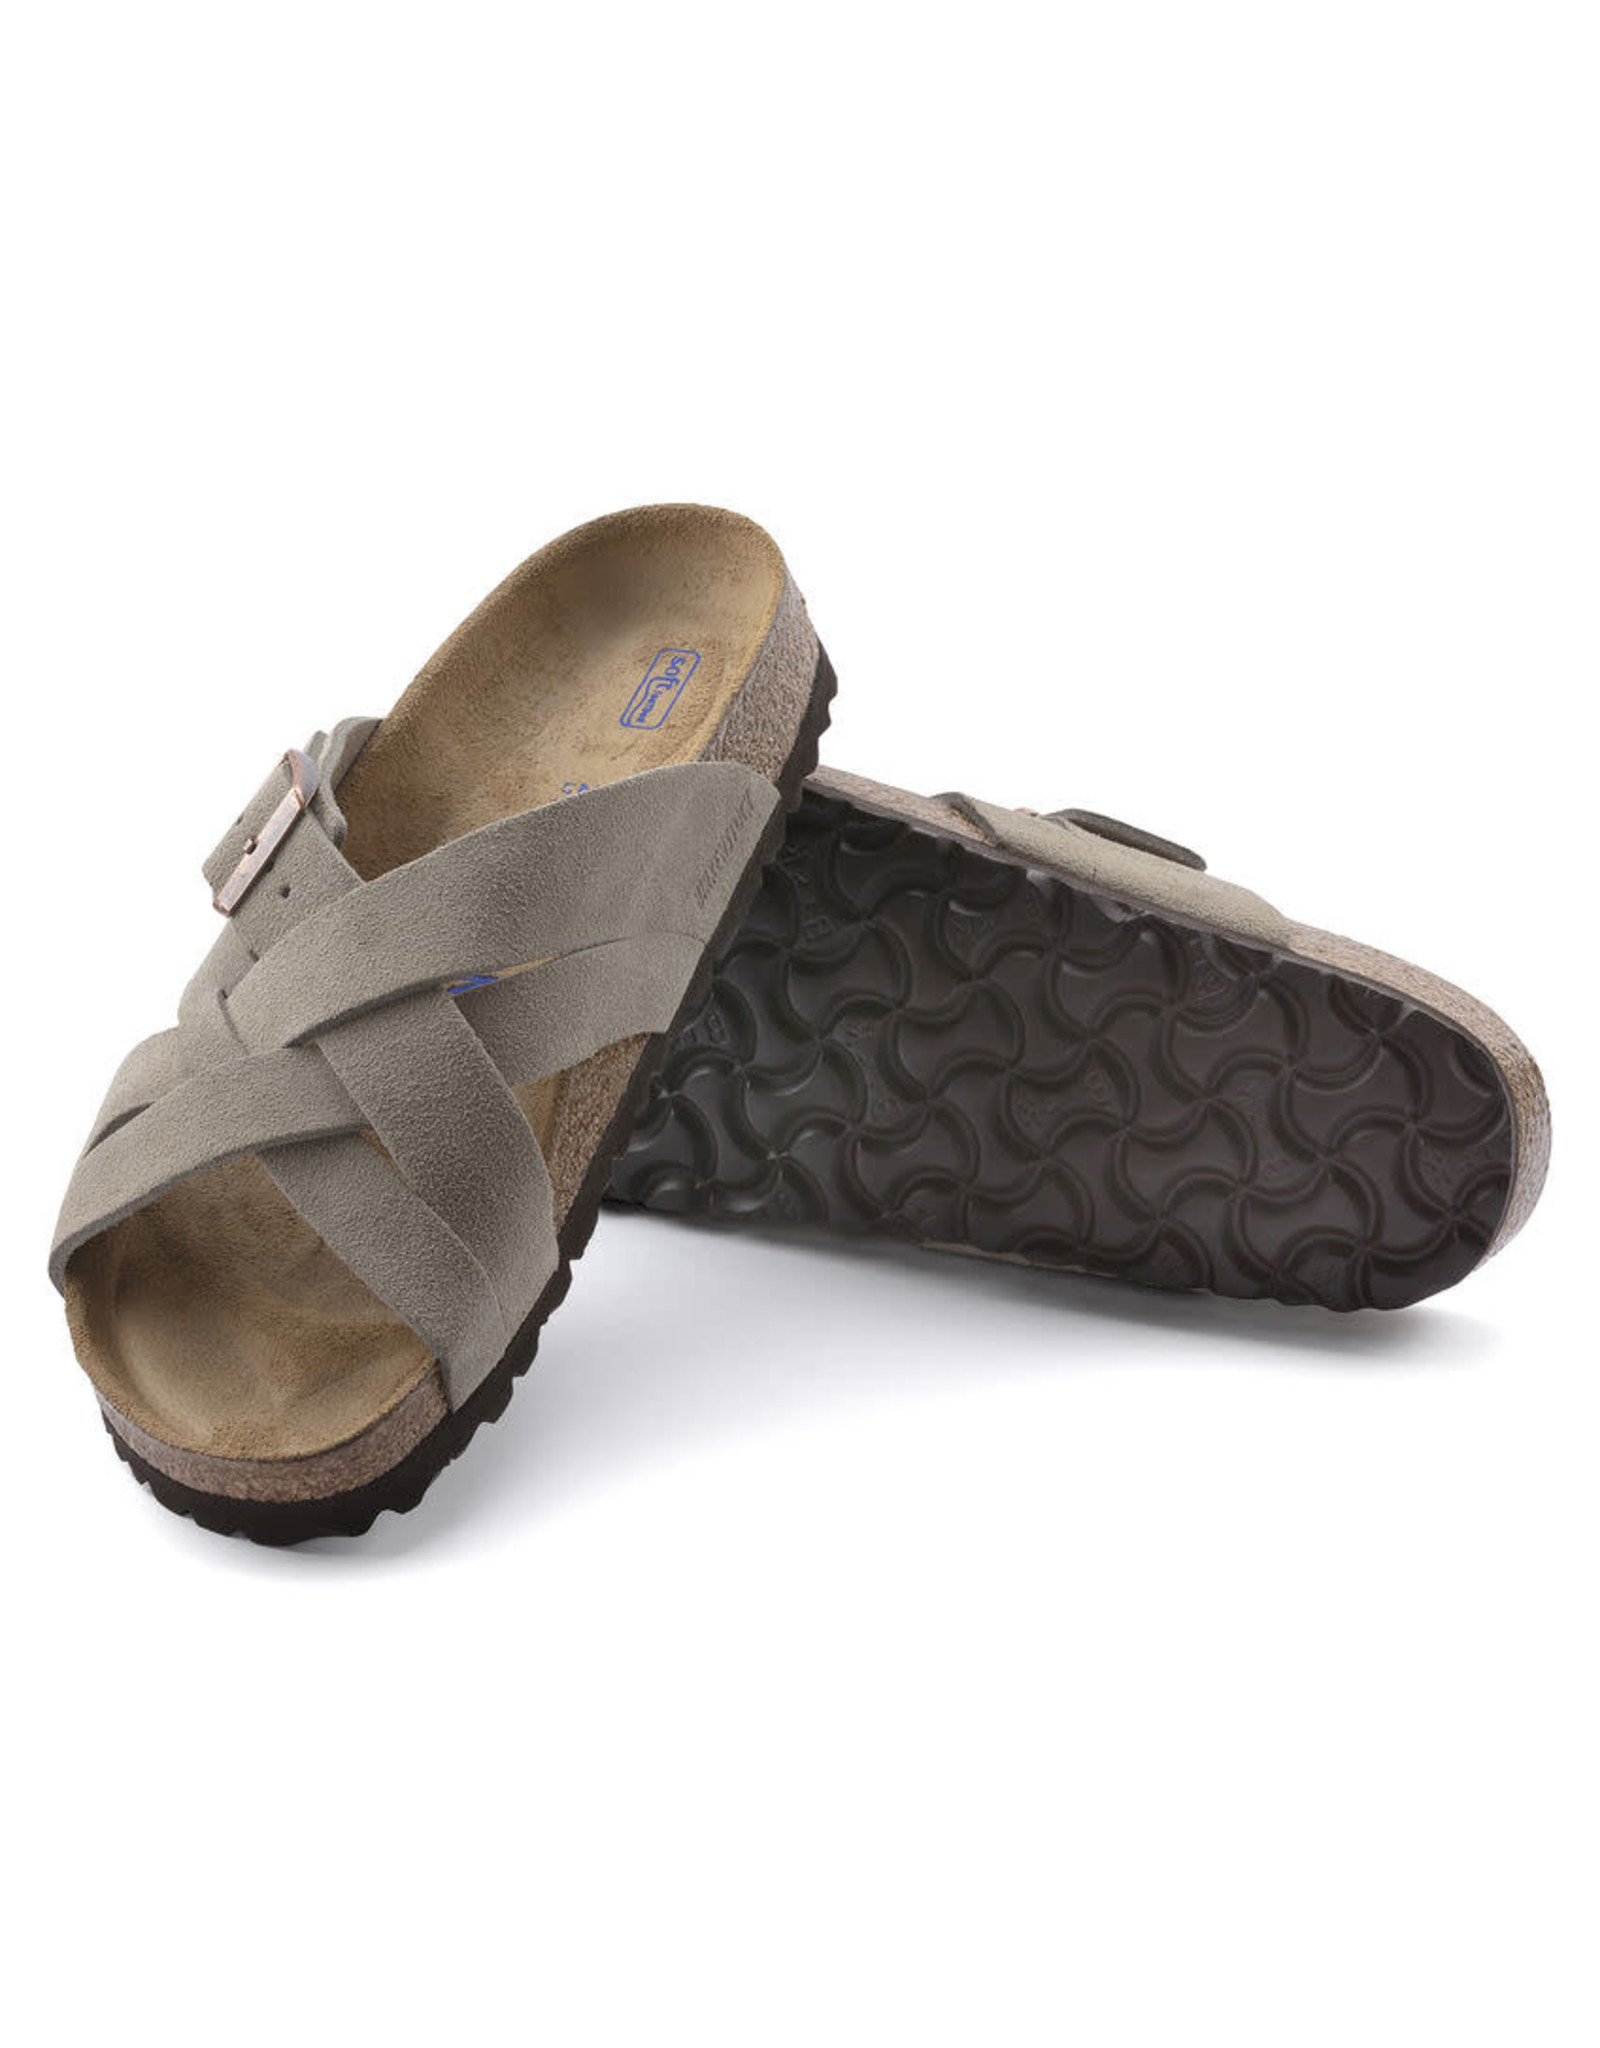 Birkenstock Lugano Suede Soft Footbed Sandal